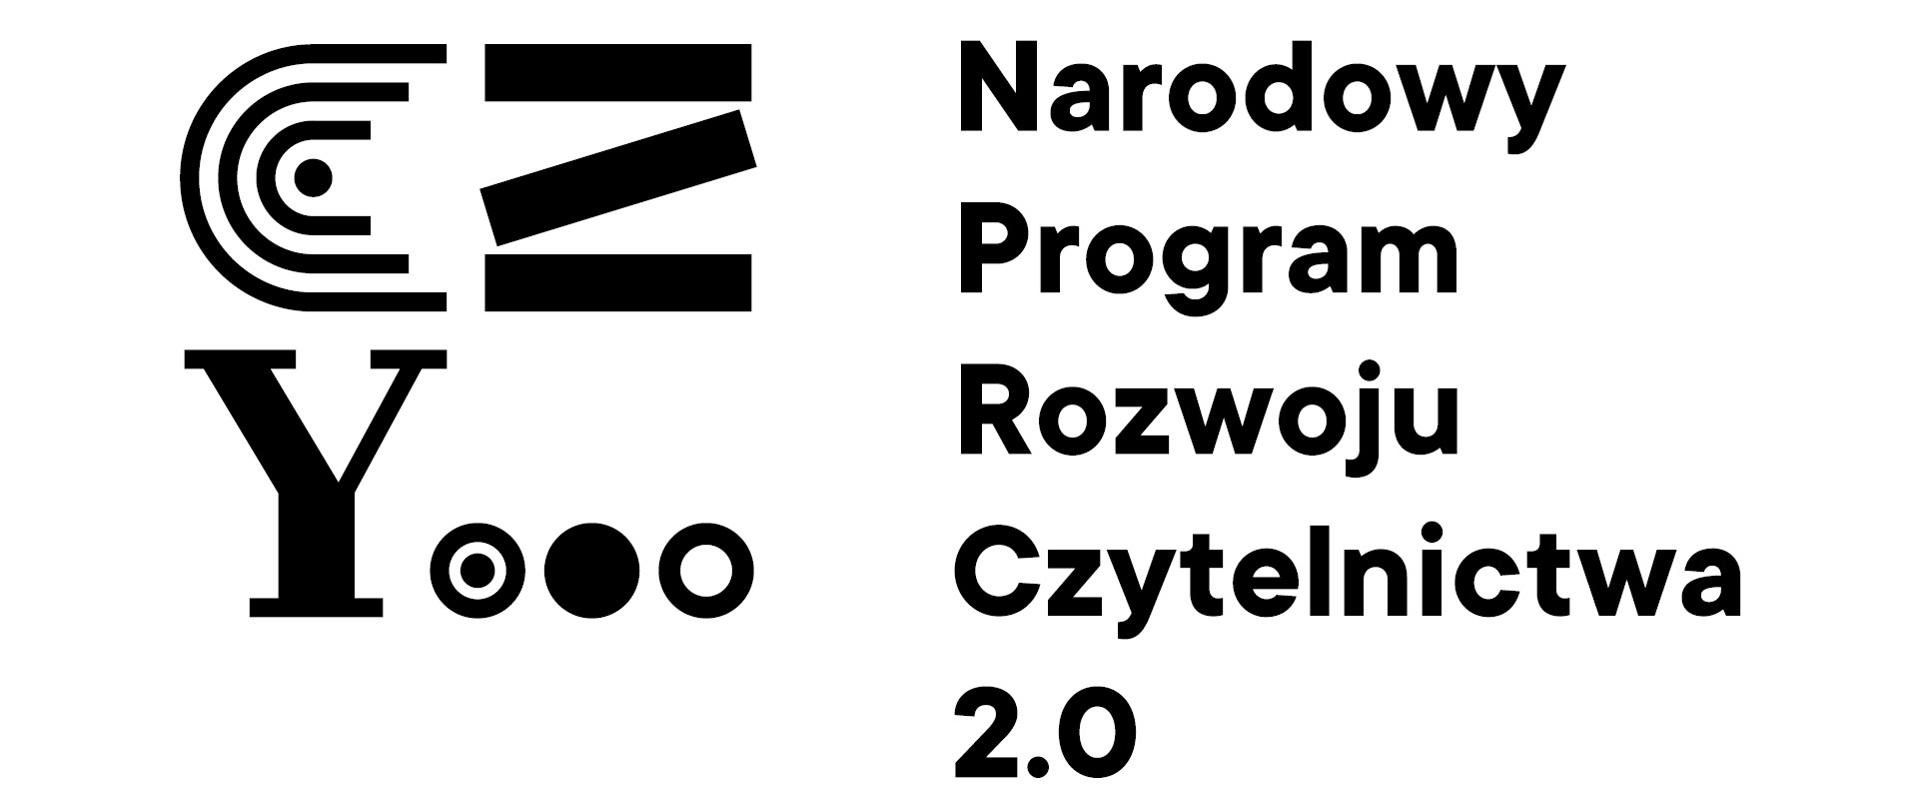 Logotyp Narodowy Program Rozwoju Czytelnictwa